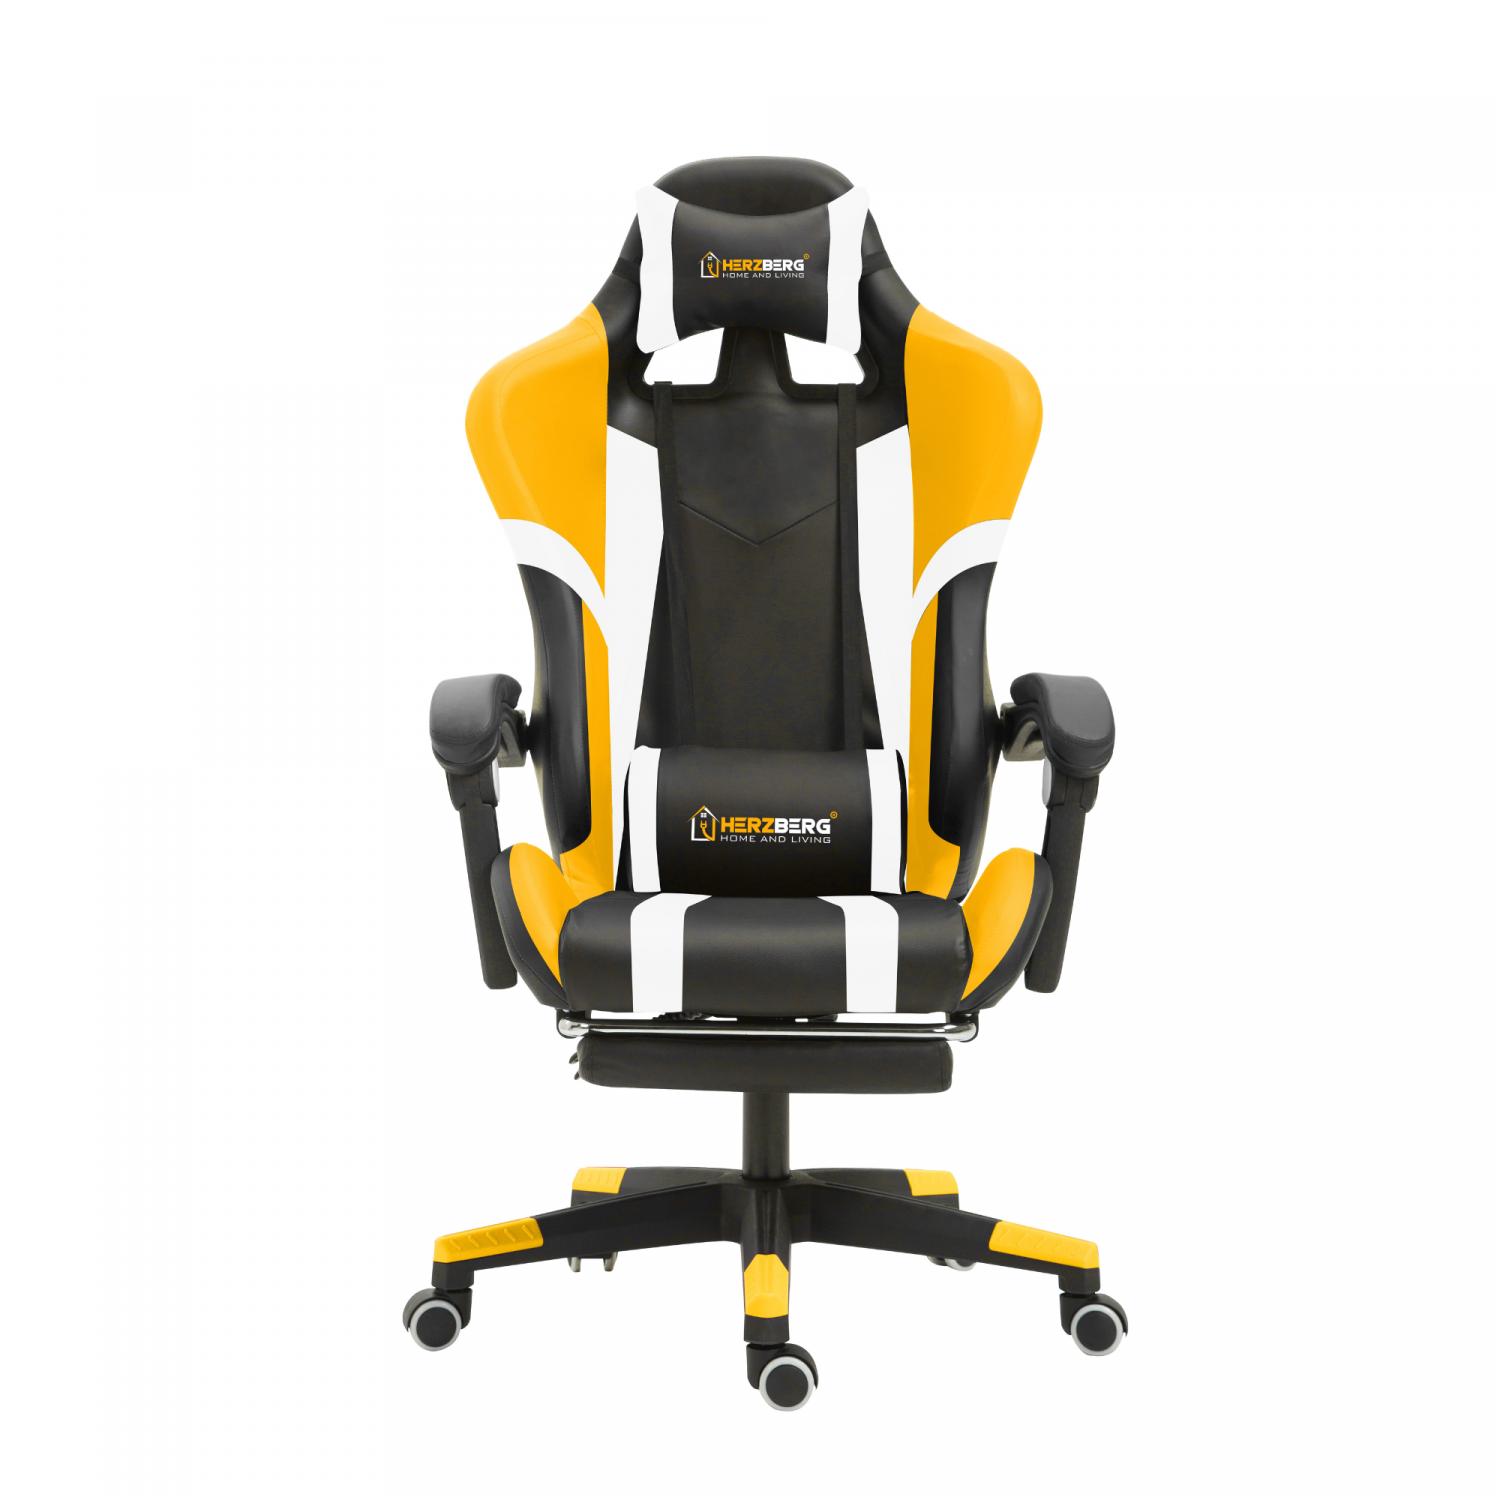 Billede af Trefarvet spille- og kontorstol med lineær accent gul